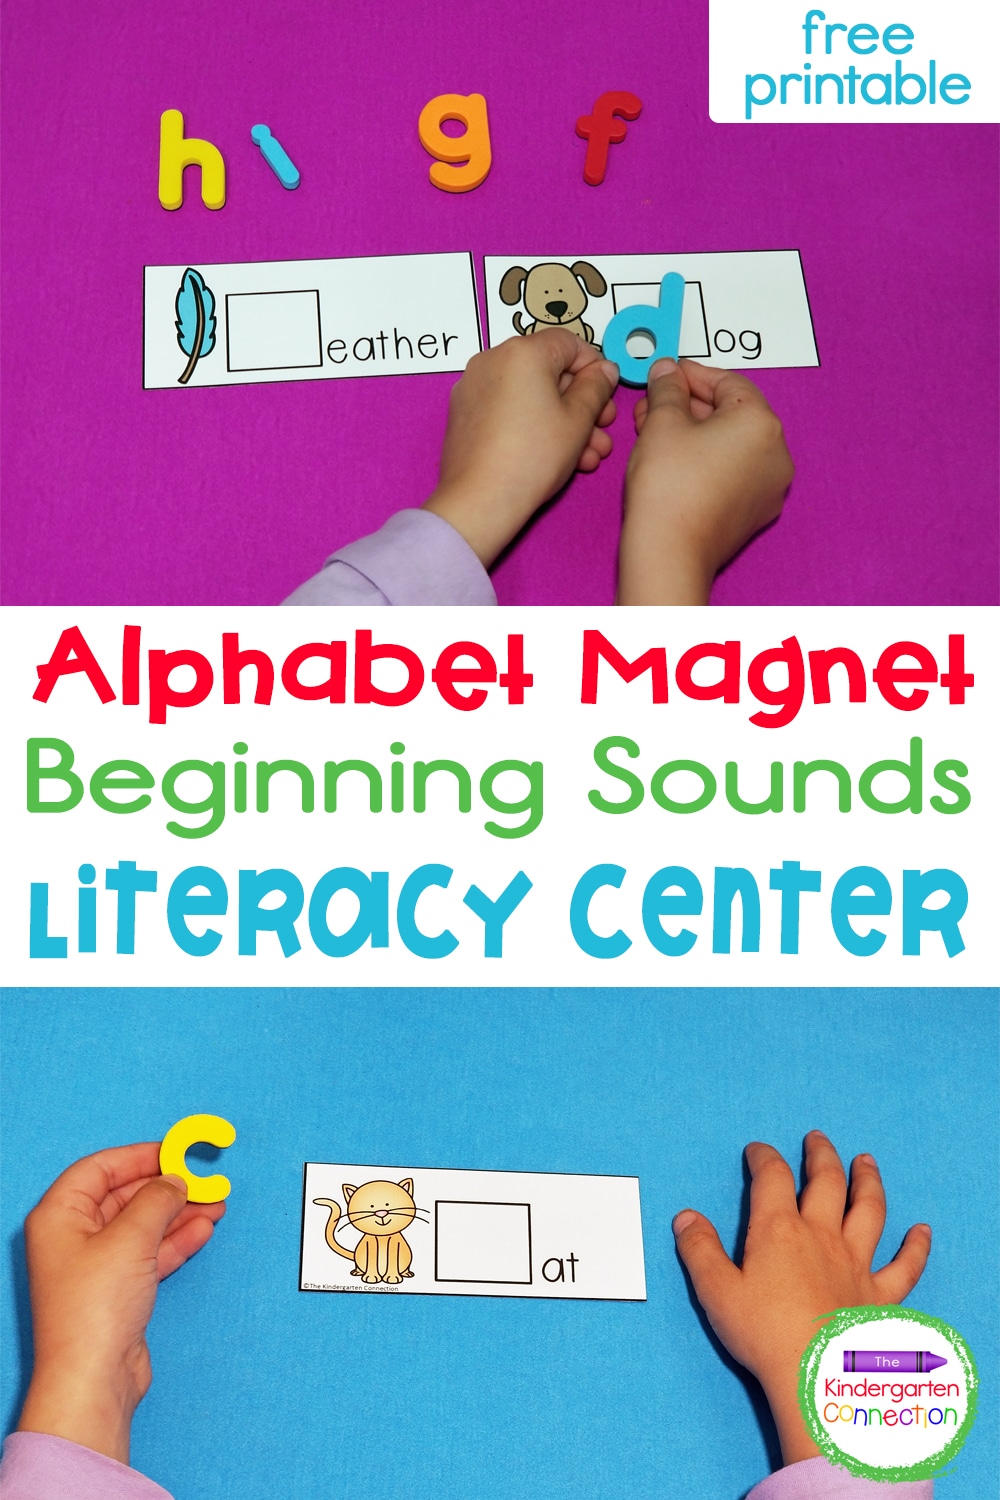 Alphabet Magnet Beginning Sounds Activity